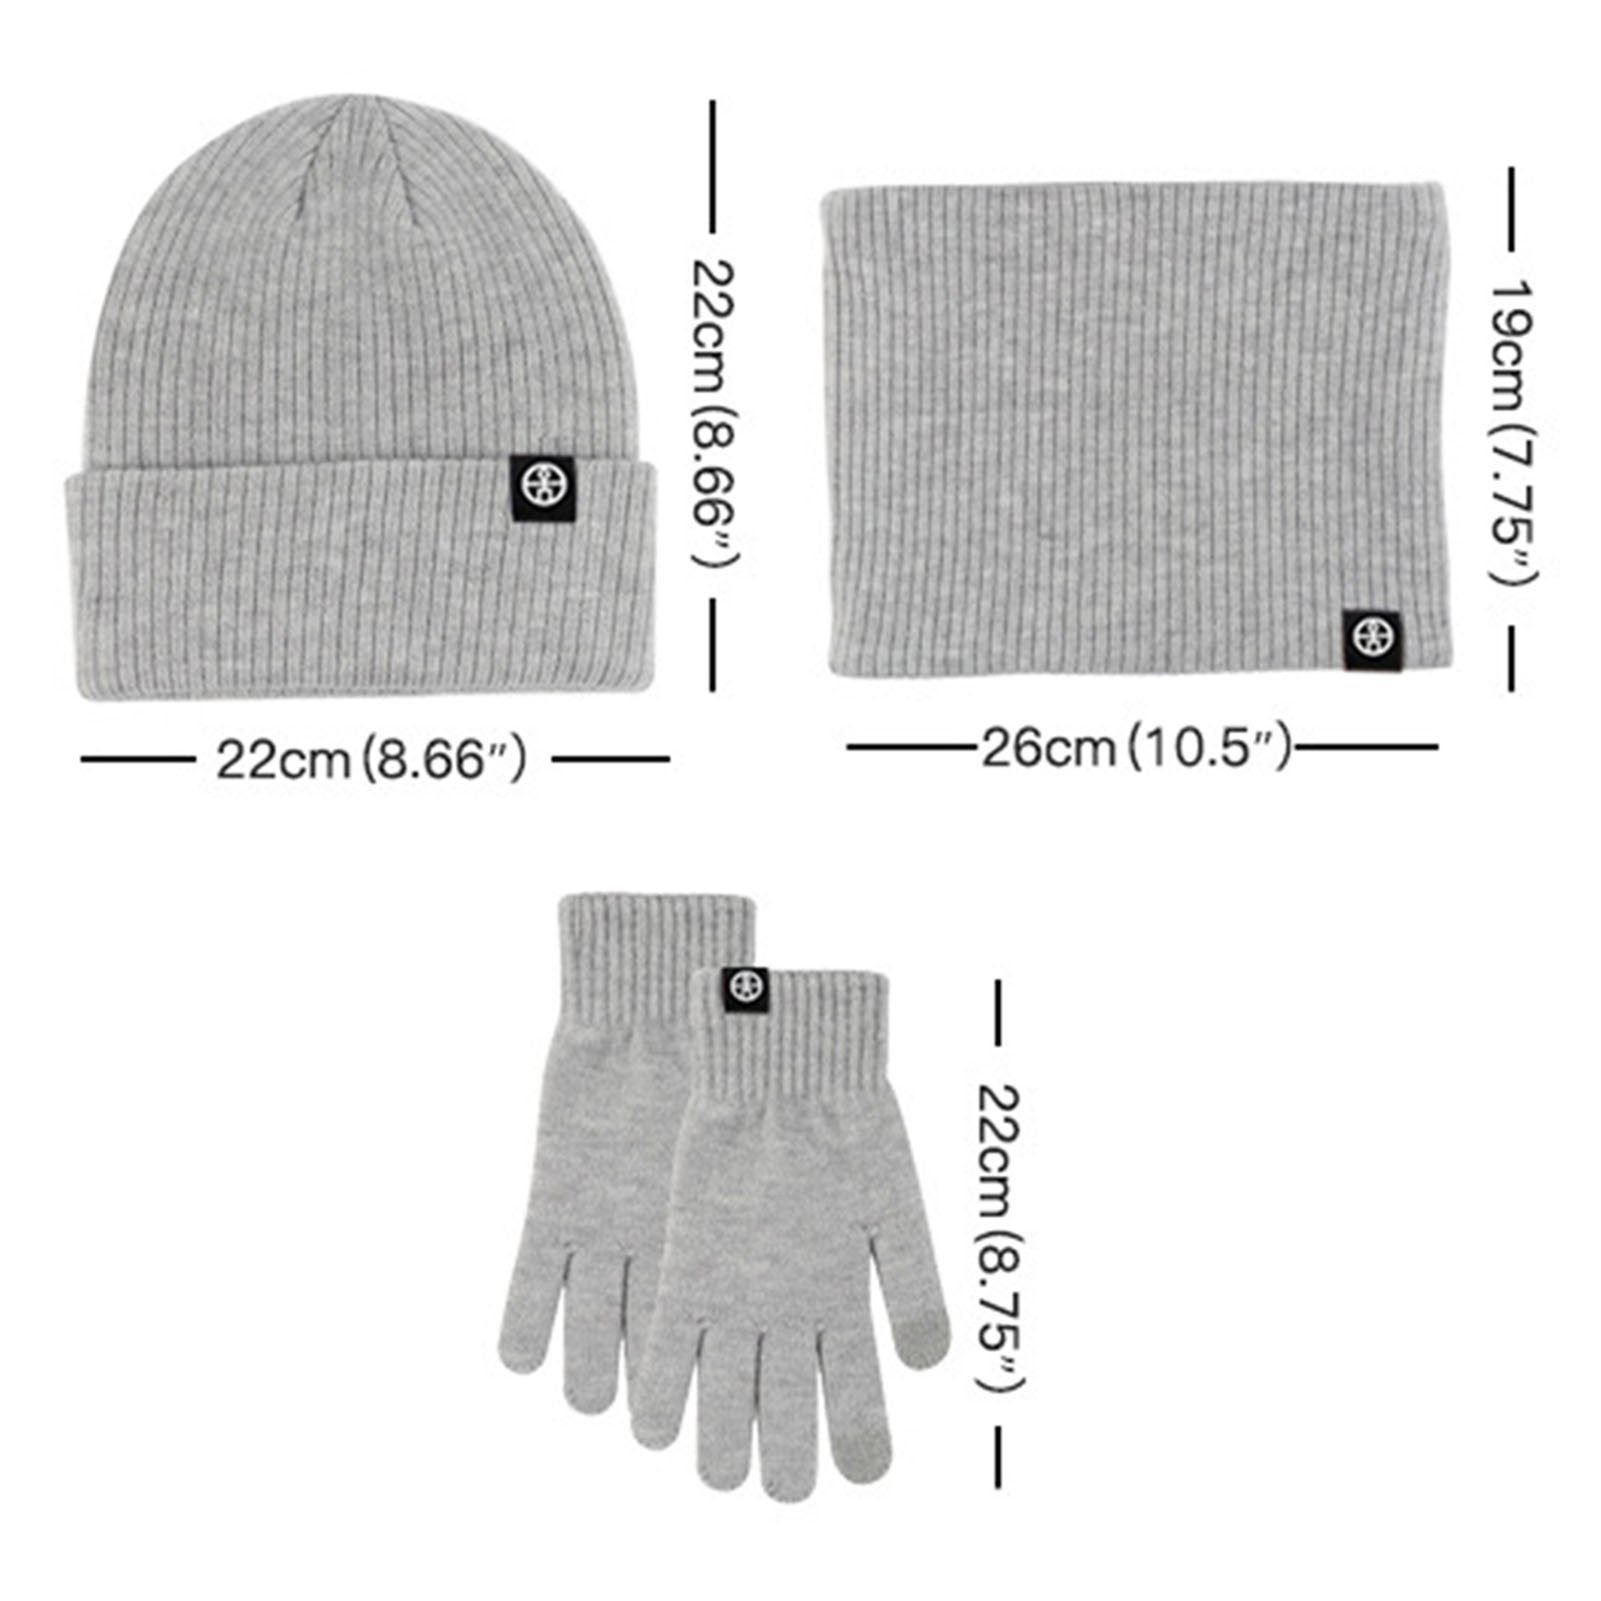 Rutaqian Schlupfmütze Unisex Beanie Strickmütze Hut Winter-Set) Handschuhe Handschuhe Knit Rutschfeste Loop Rosa (3-in-1 Thermo Winterschal Schal Warme